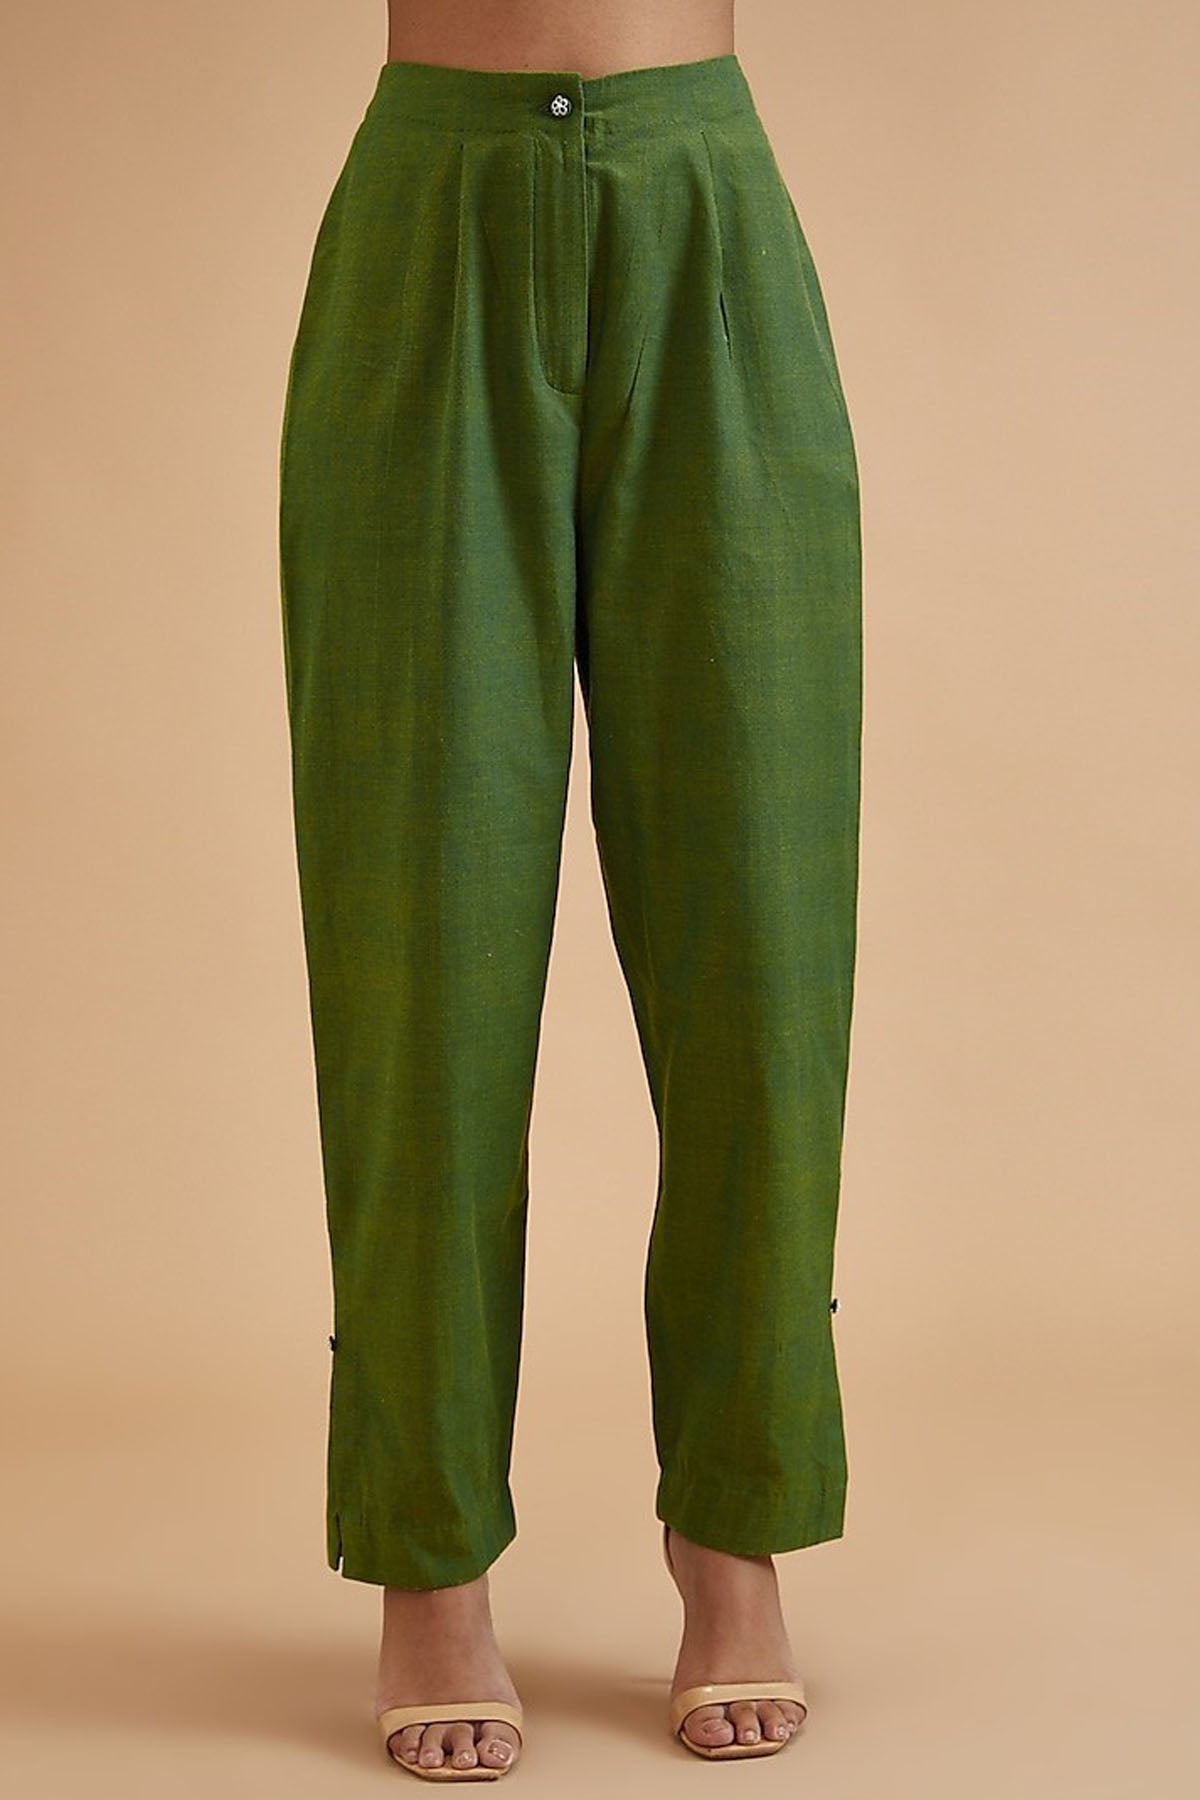 Phagun Women's Beige Dupion Pants High Waist Narrow Bottom Trousers-Large -  Walmart.com